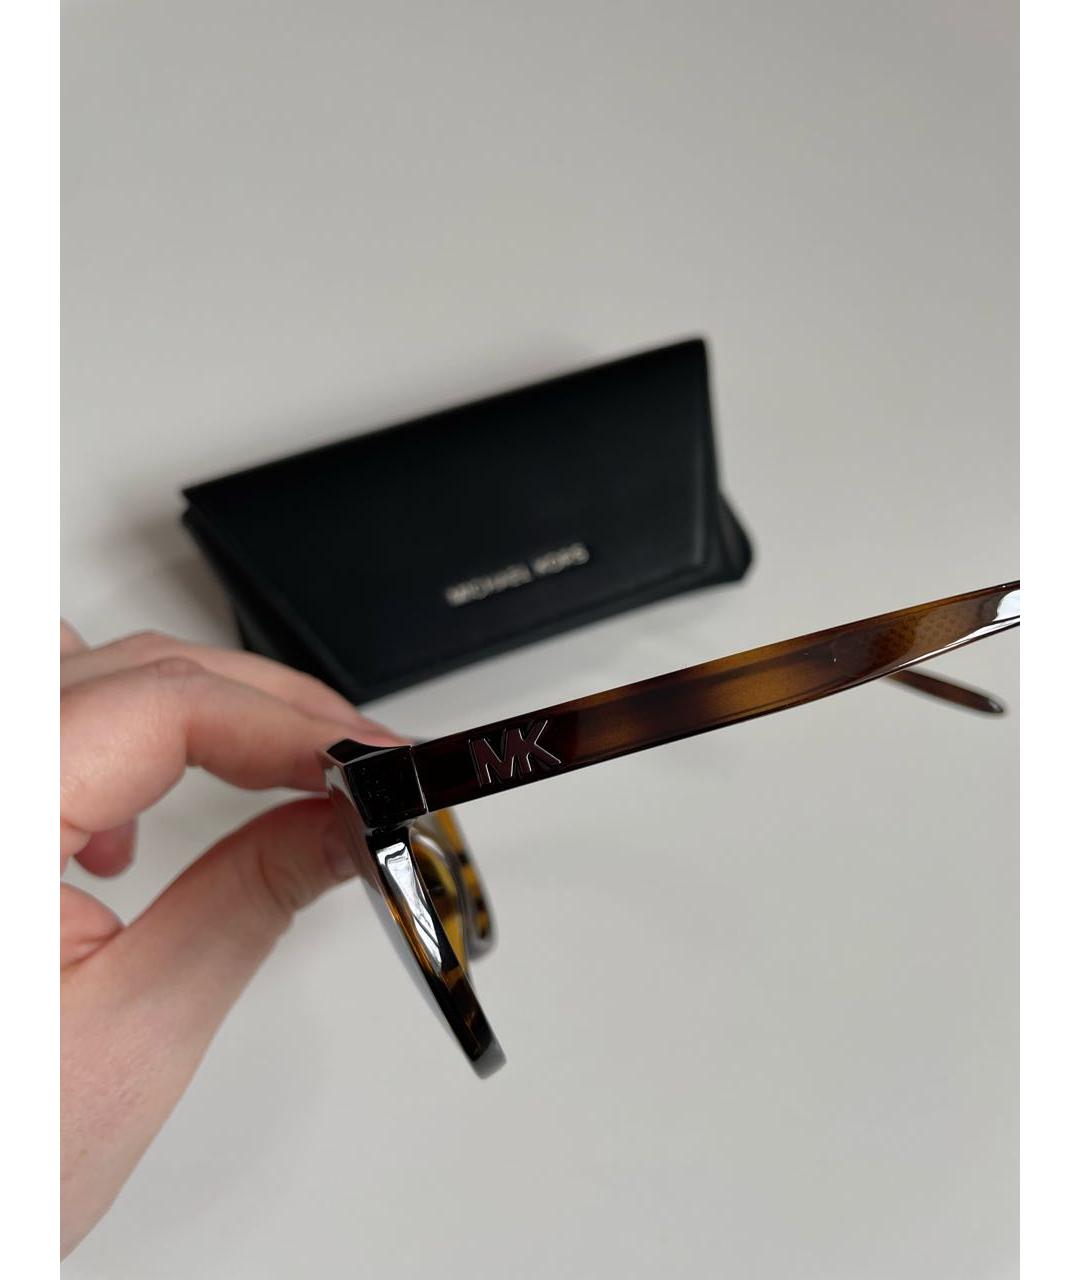 MICHAEL KORS Коричневые пластиковые солнцезащитные очки, фото 2